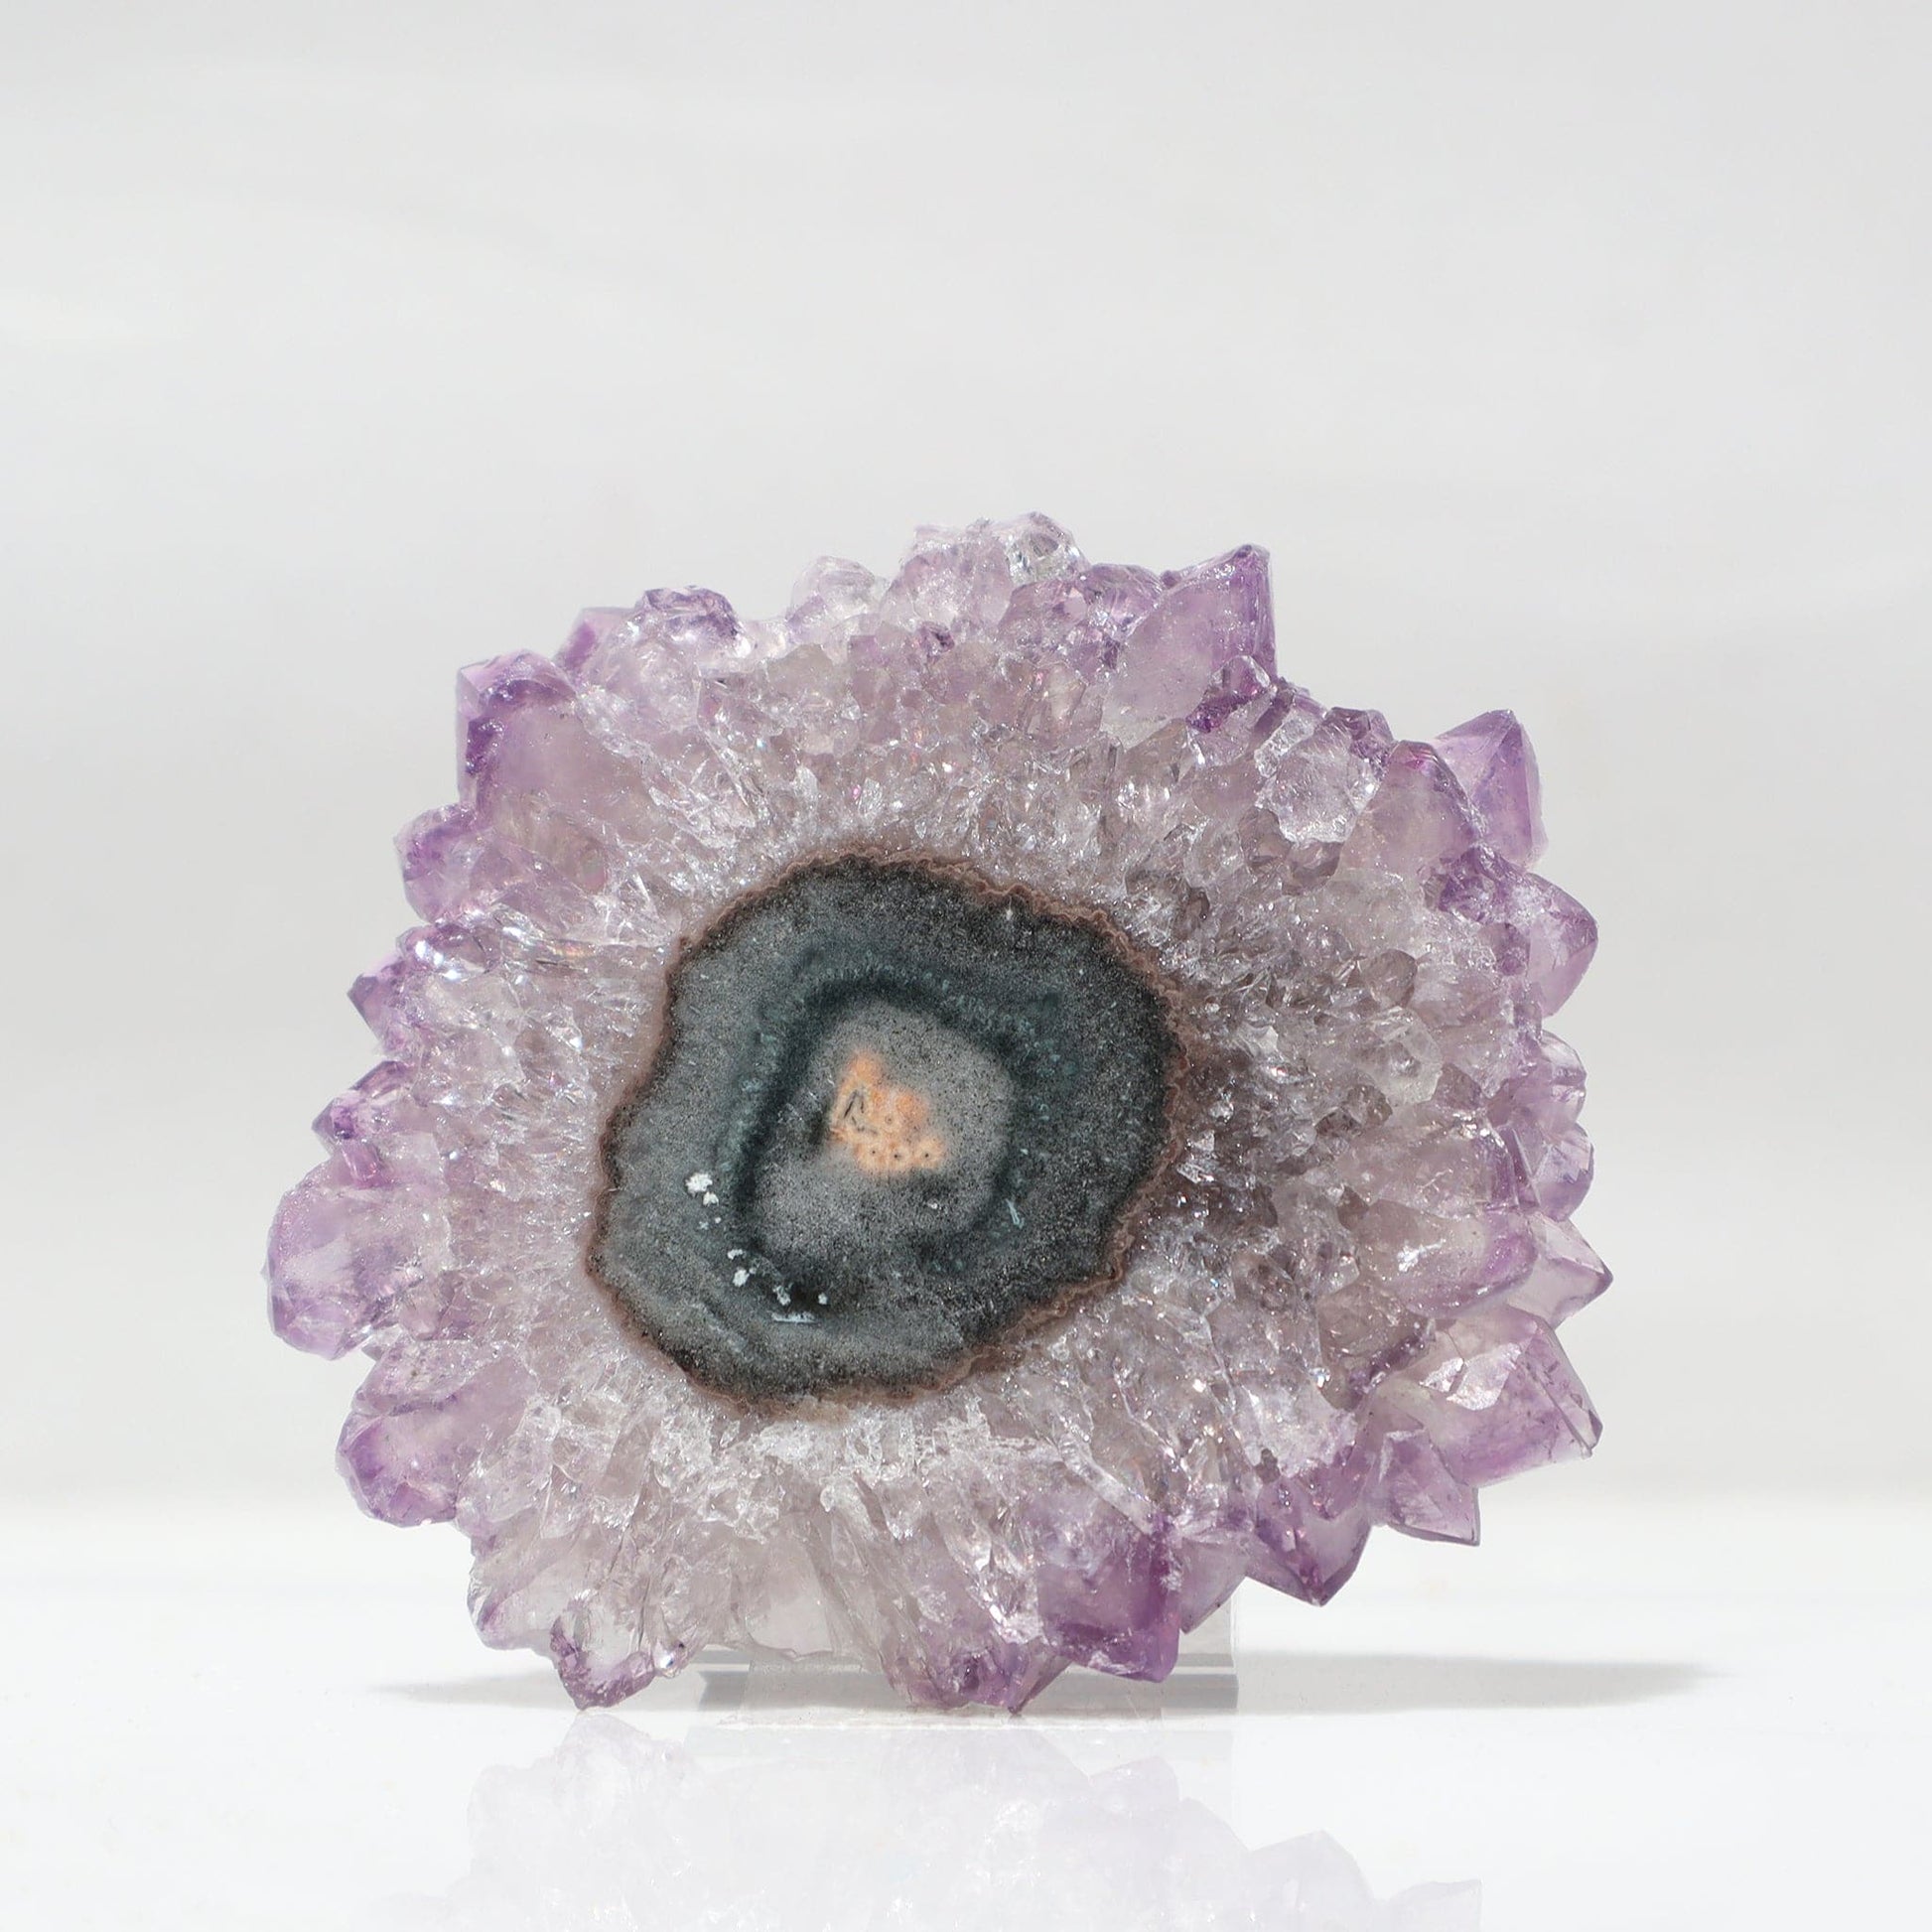 Amethyst Violet Crystal Peaks Stalactite Slice - Deepest Earth